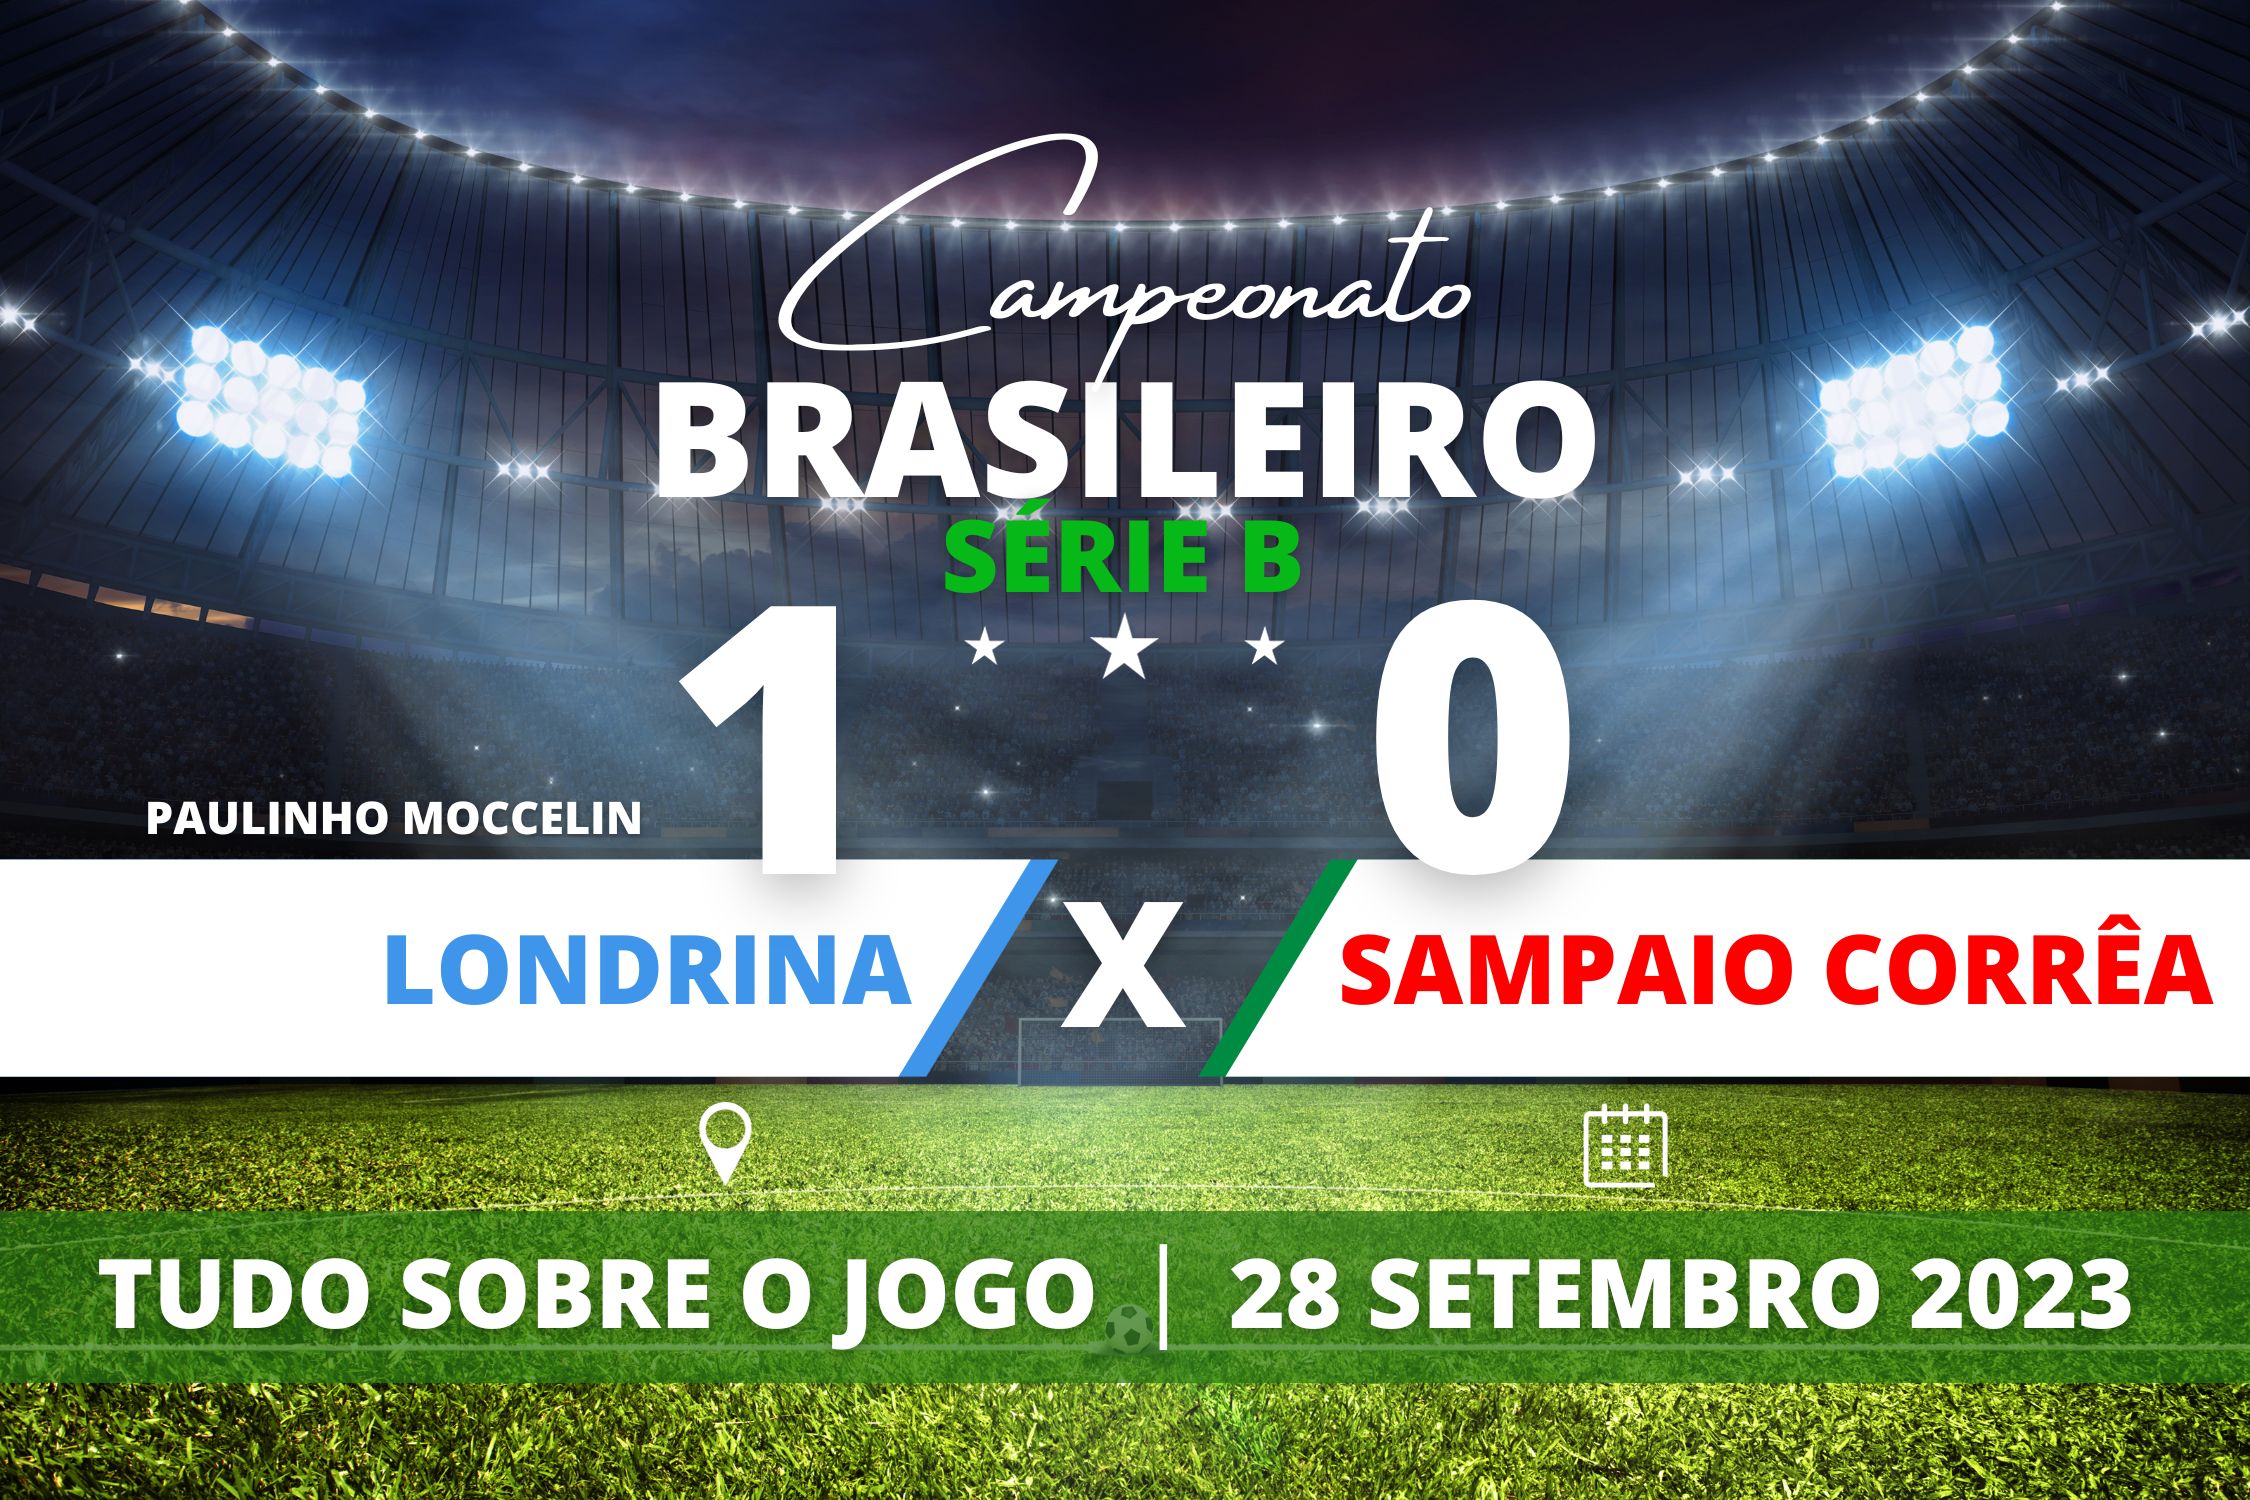 Londrina 1 x 0 Sampaio Corrêa - Londrina vence o Sampaio Corrêa com gol de Paulinho Moccelin no primeiro tempo e quebra jejum de sete jogos sem vencer no Campeonato Brasileiro da Série B.